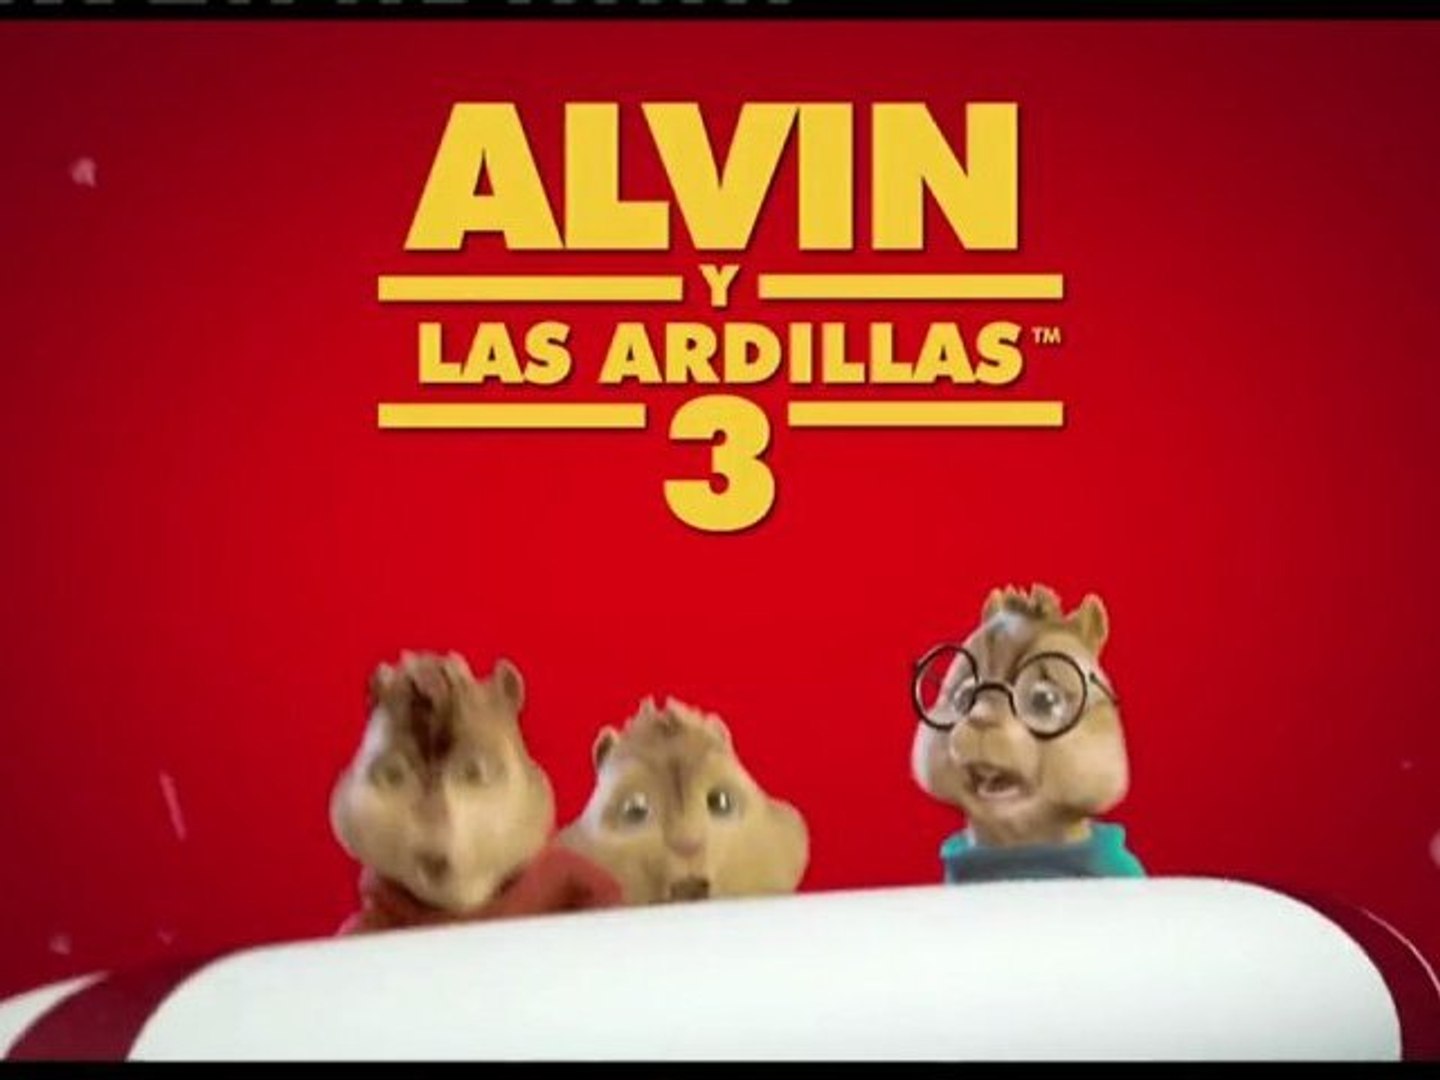 Alvin y las ardillas 3 en español latino